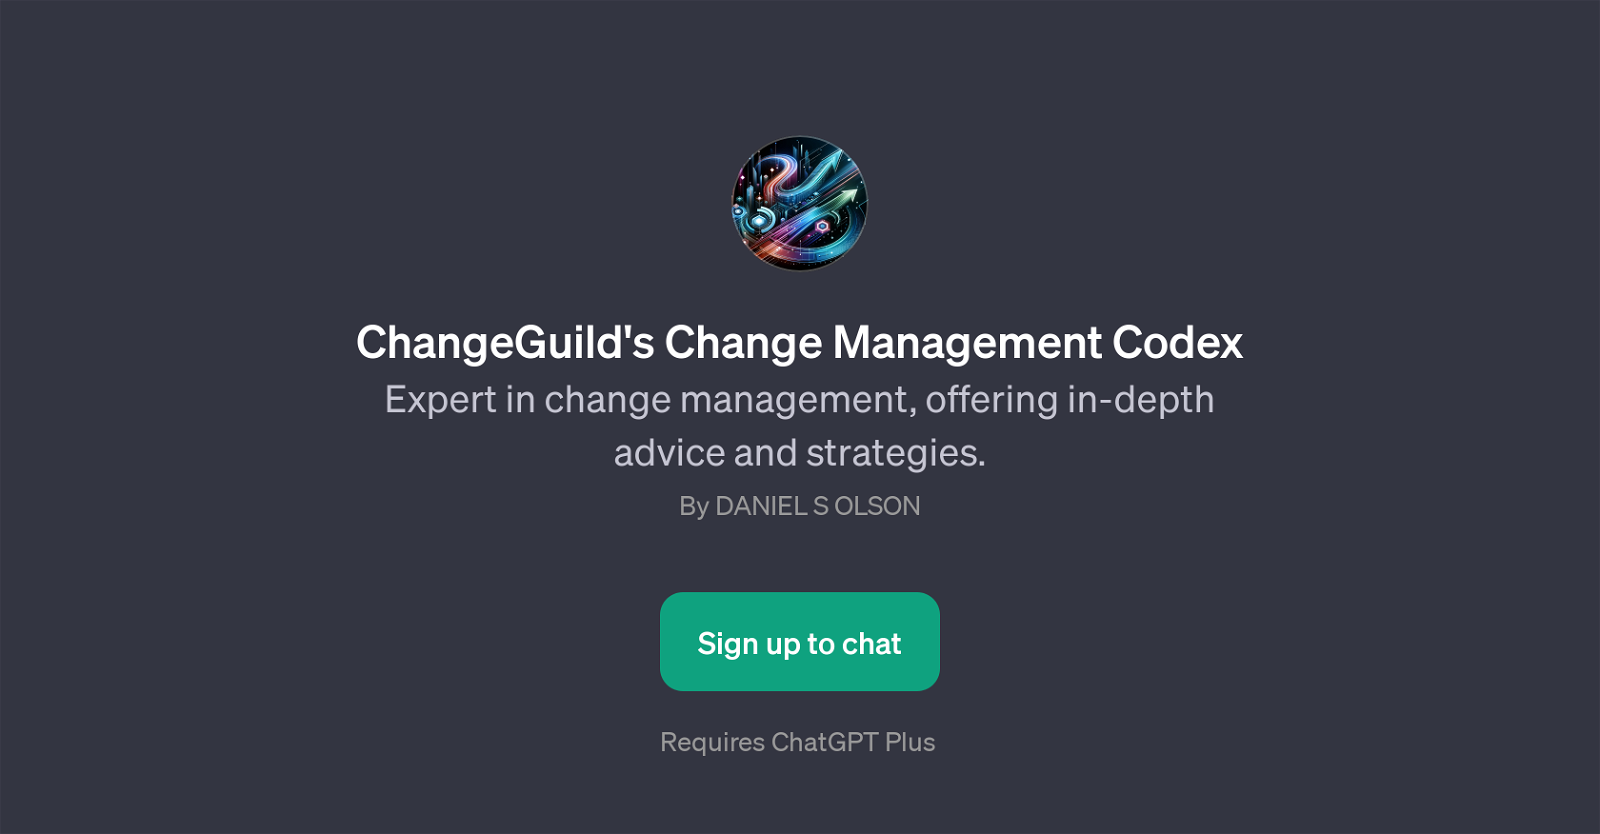 ChangeGuild's Change Management Codex website